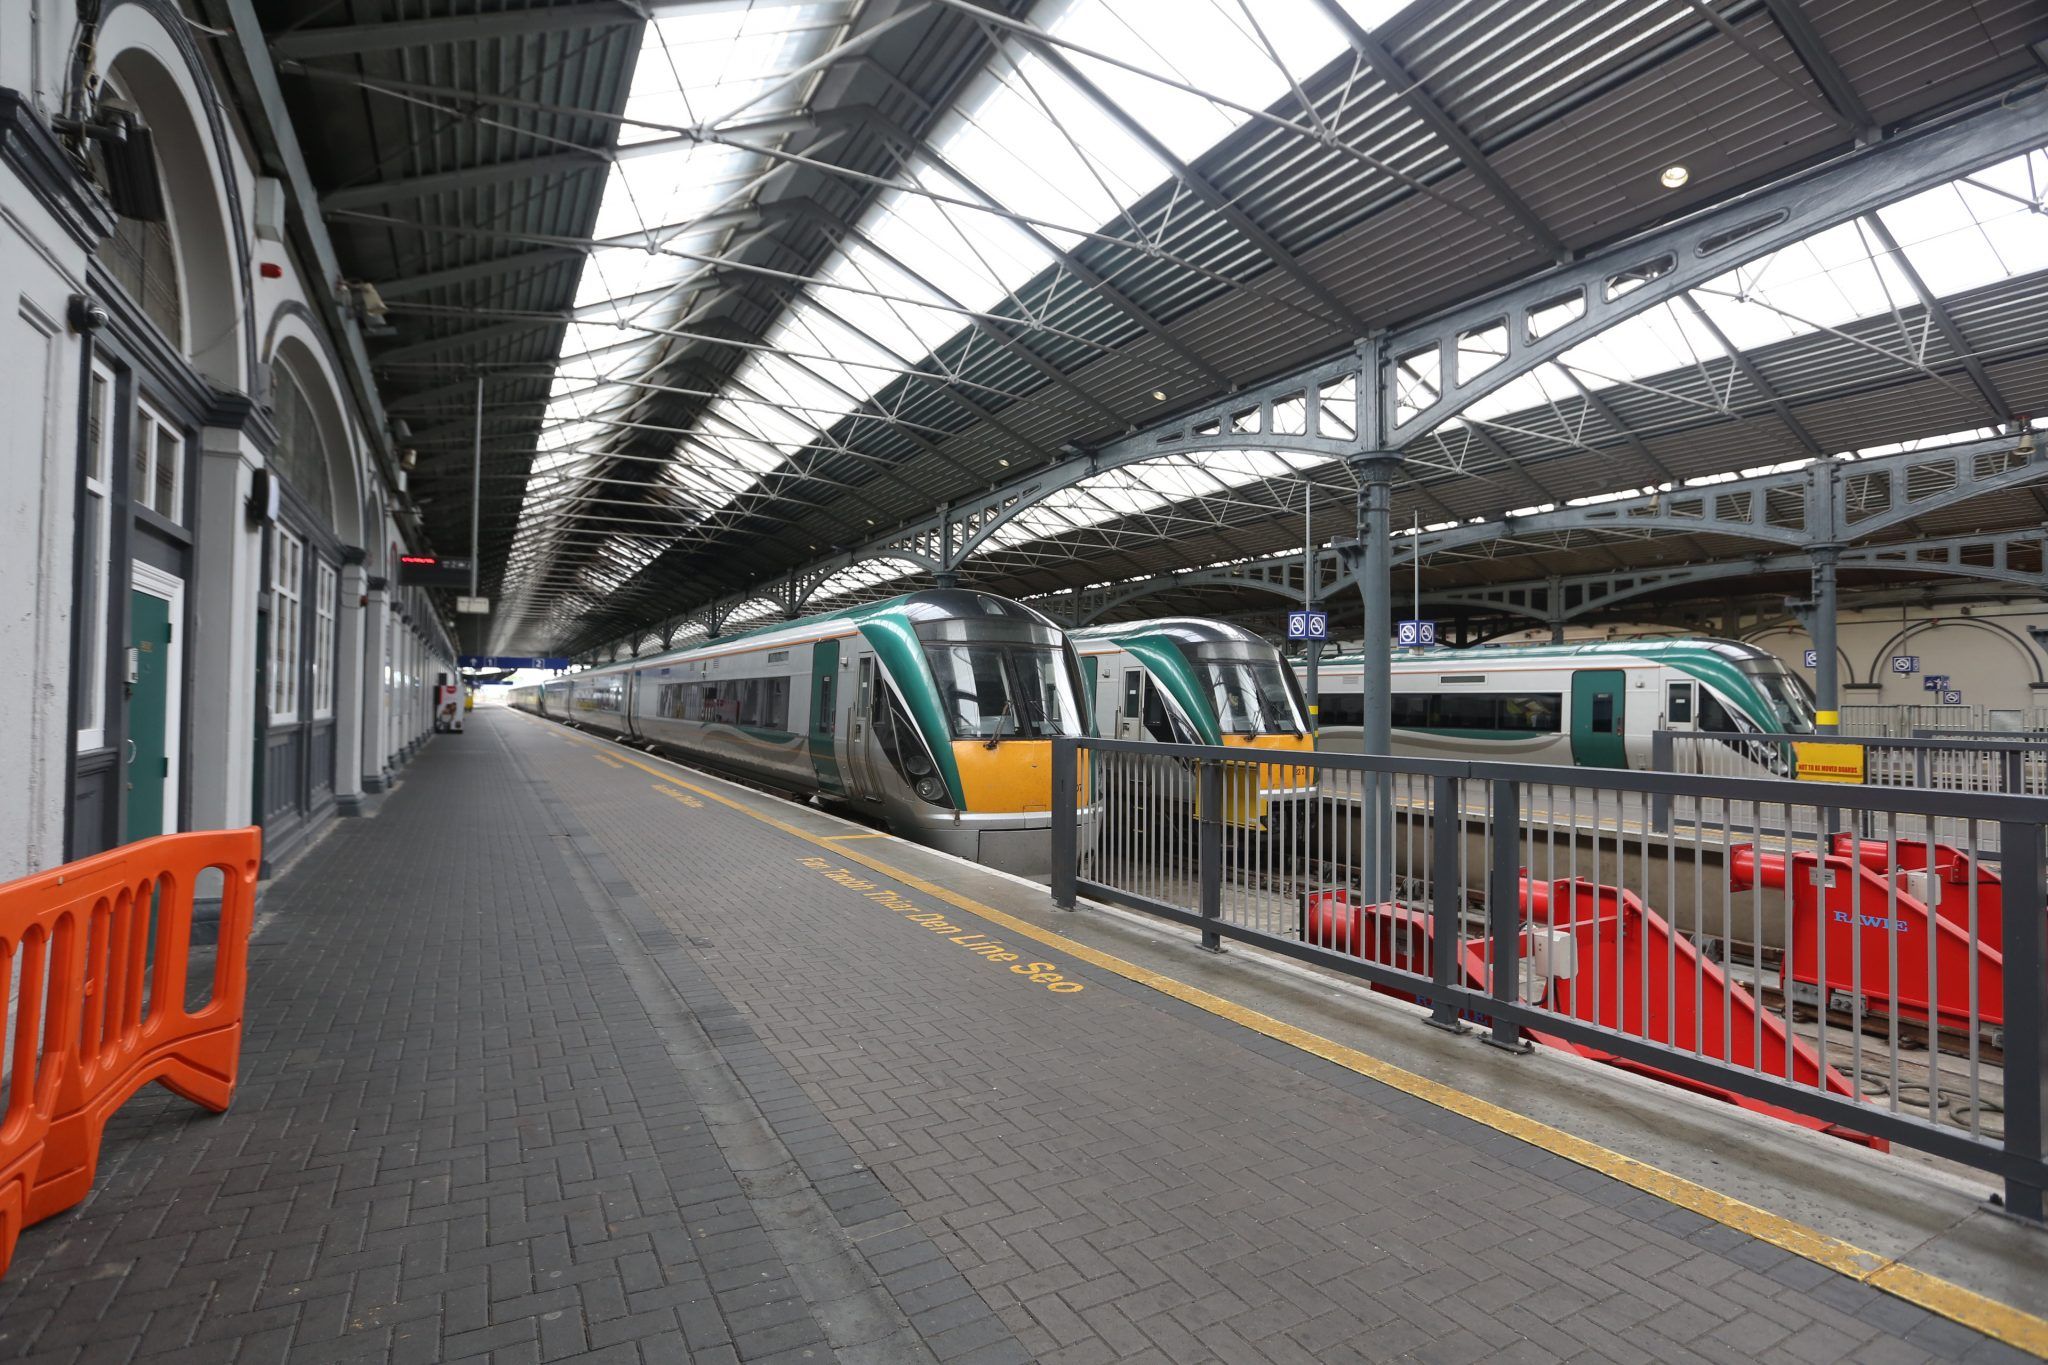 Sligo train